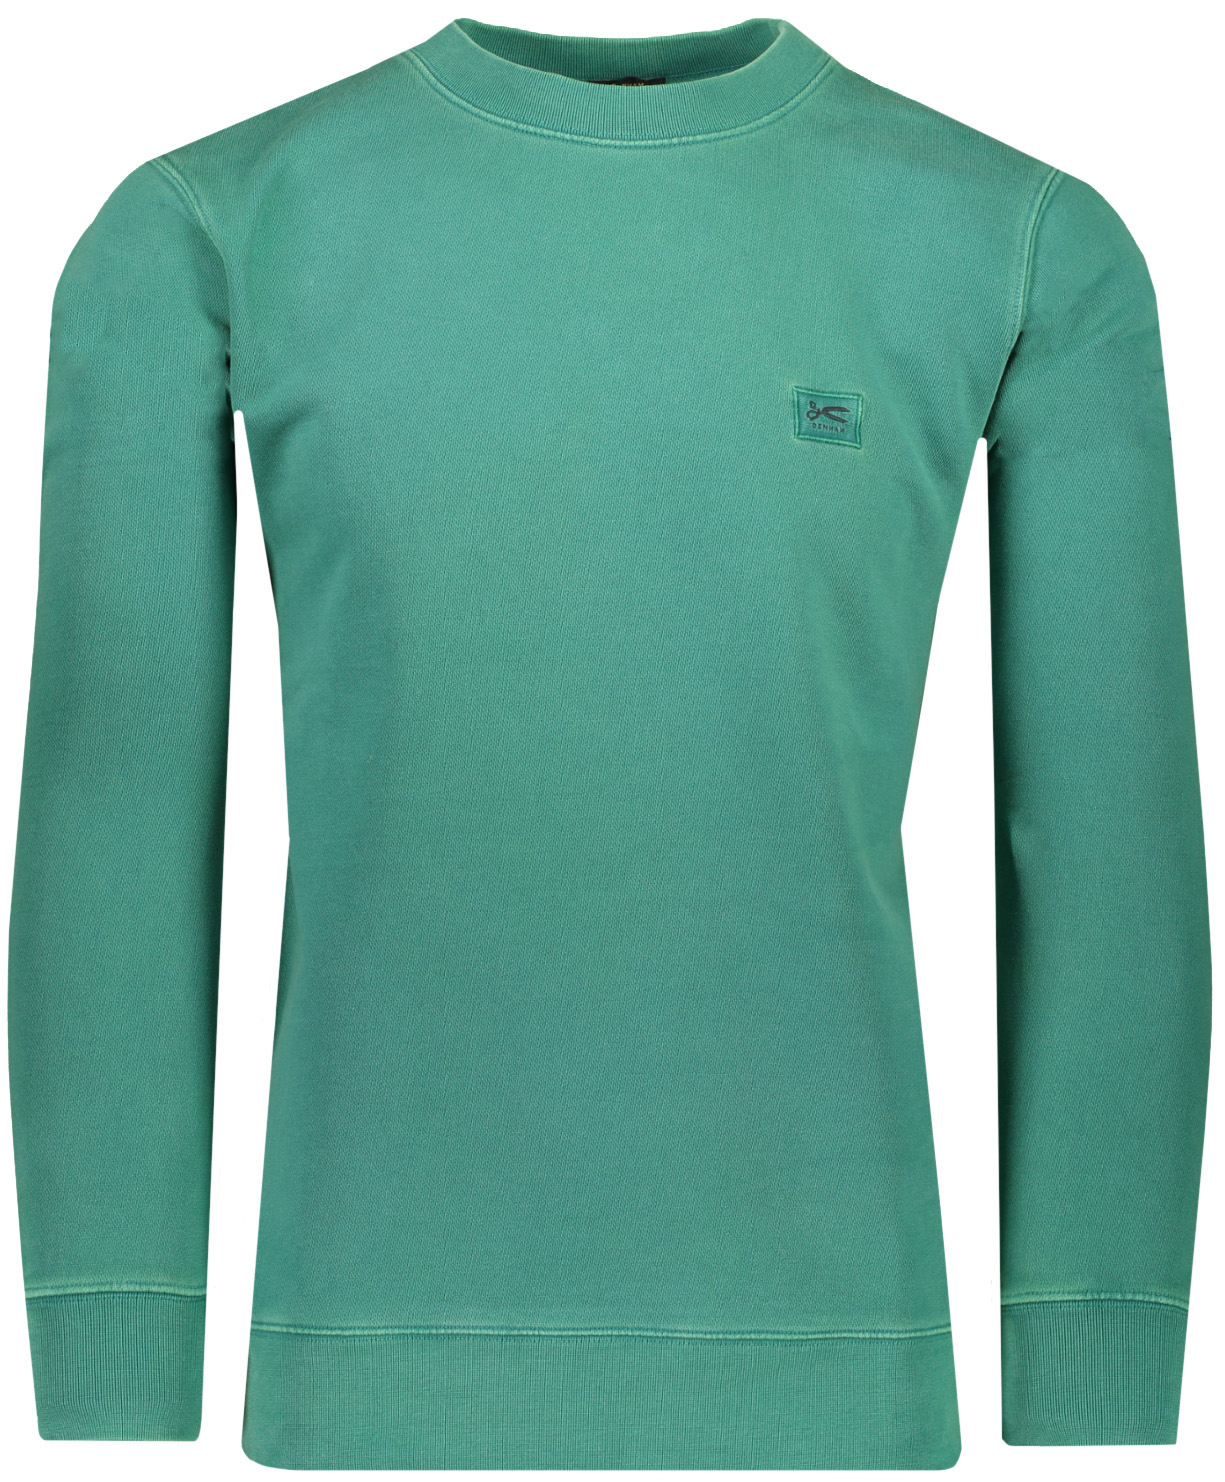 denham Sweater Groen sweat kopen | Hans voortman